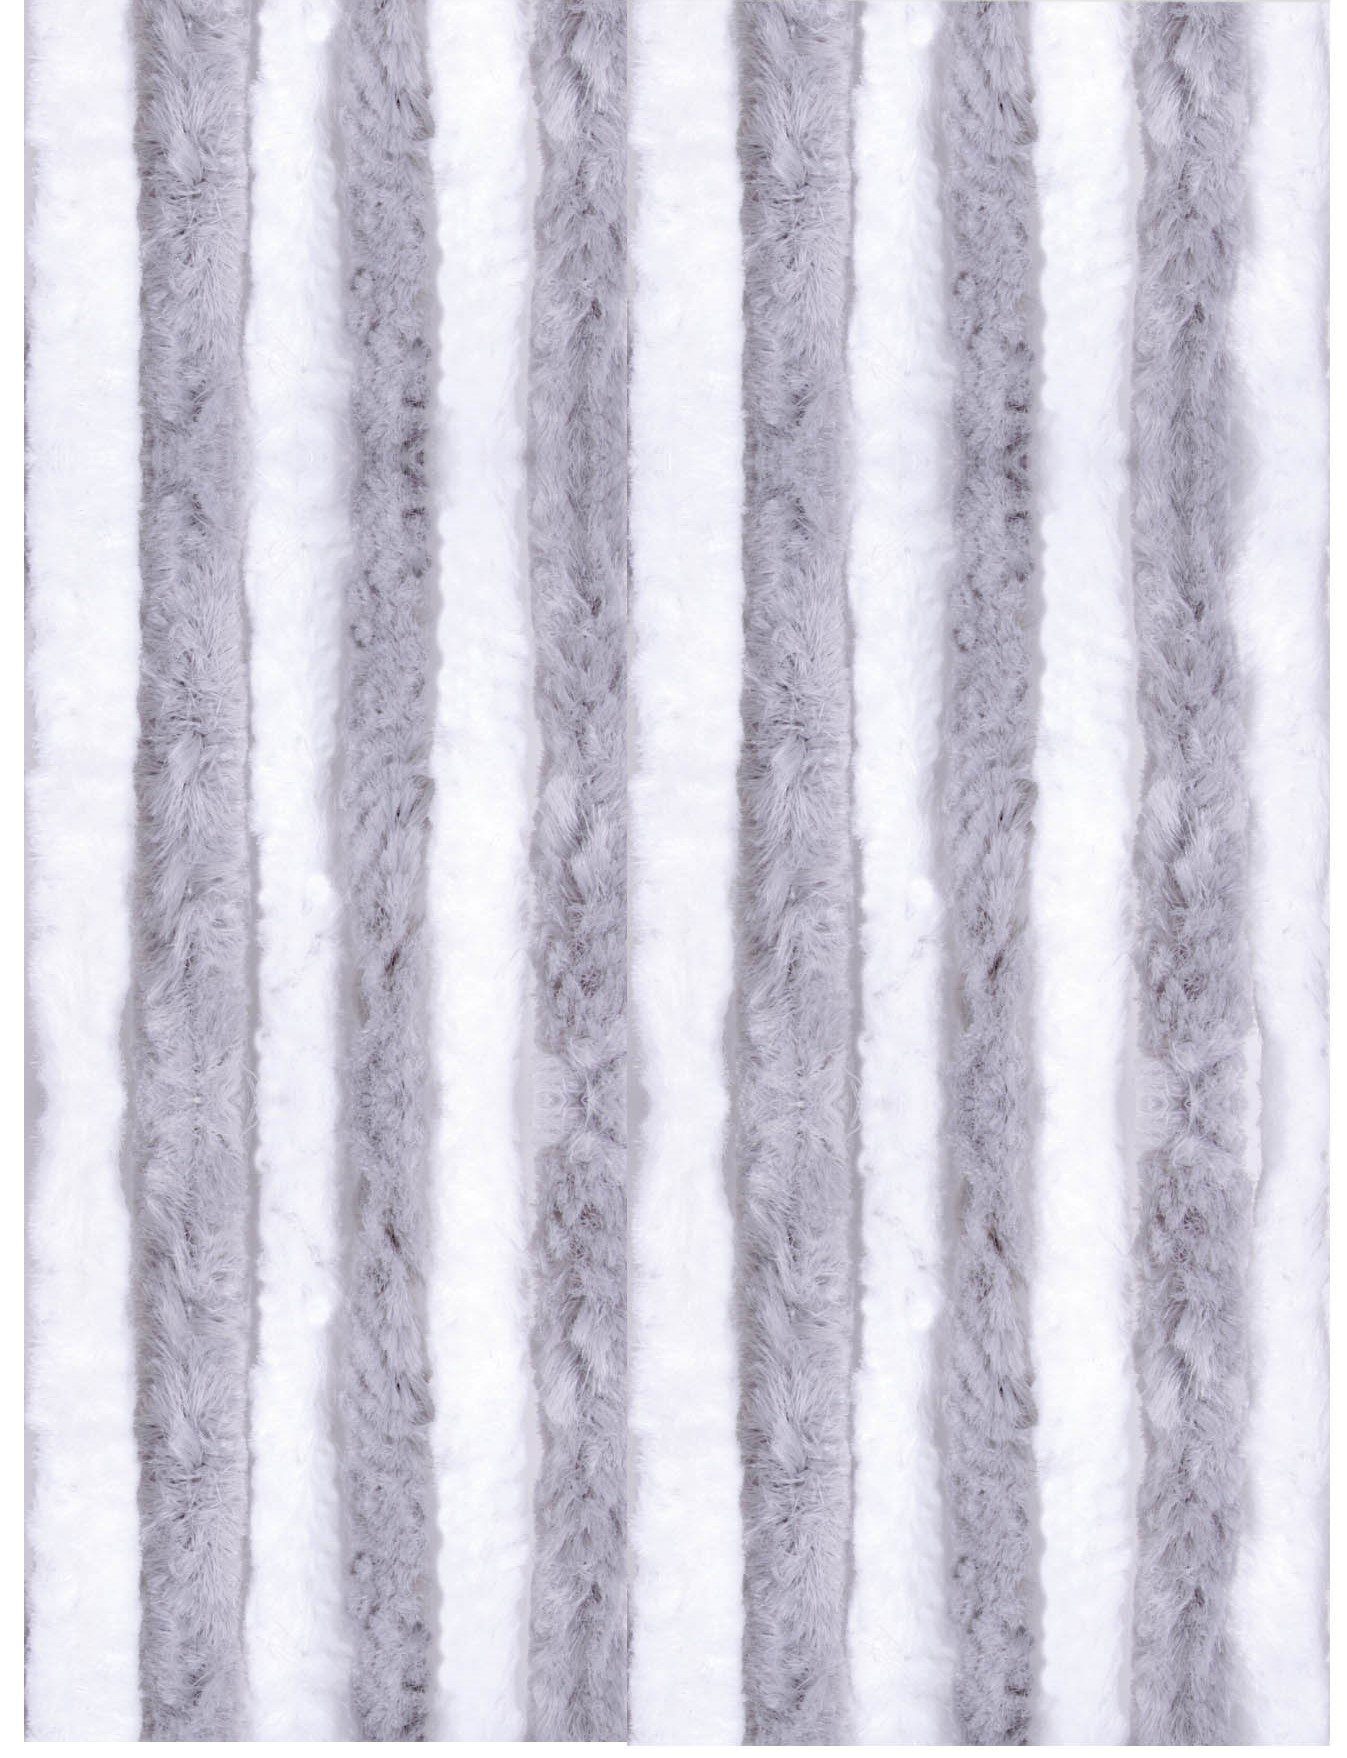 Türvorhang Flauschi, Arsvita, Ösen (1 St), blickdicht, Flauschvorhang in 120x200cm (BxL), perfekter Insekten- und Sichtschutz, viele versch. Farben und Größen verfügbar Hellgrau - Weiß